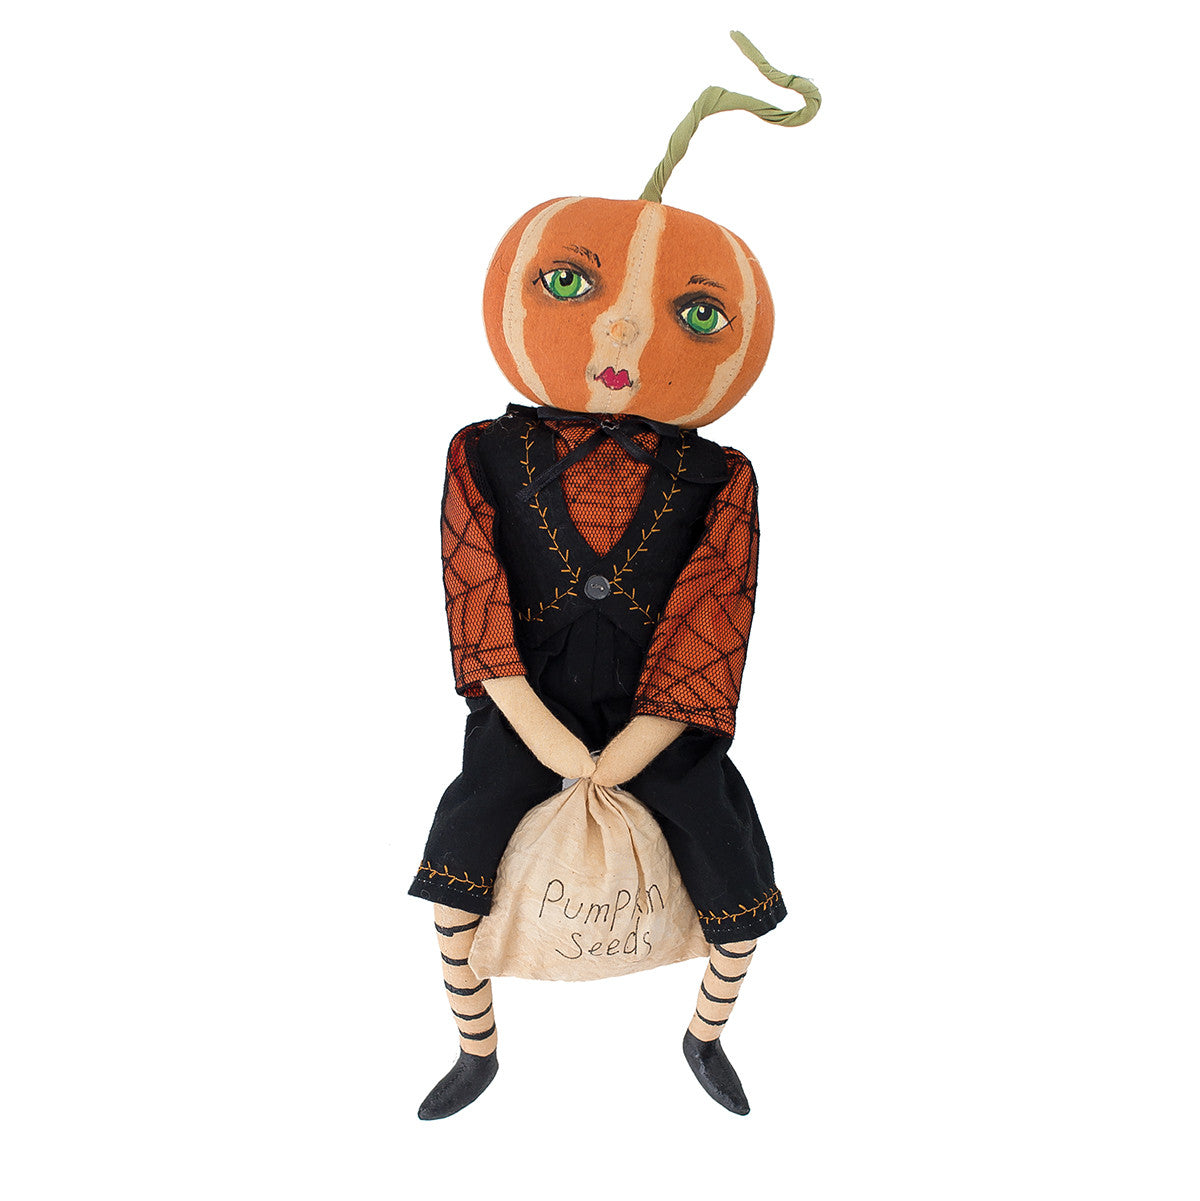 Joe Spencer Todd Pumpkin Head Doll